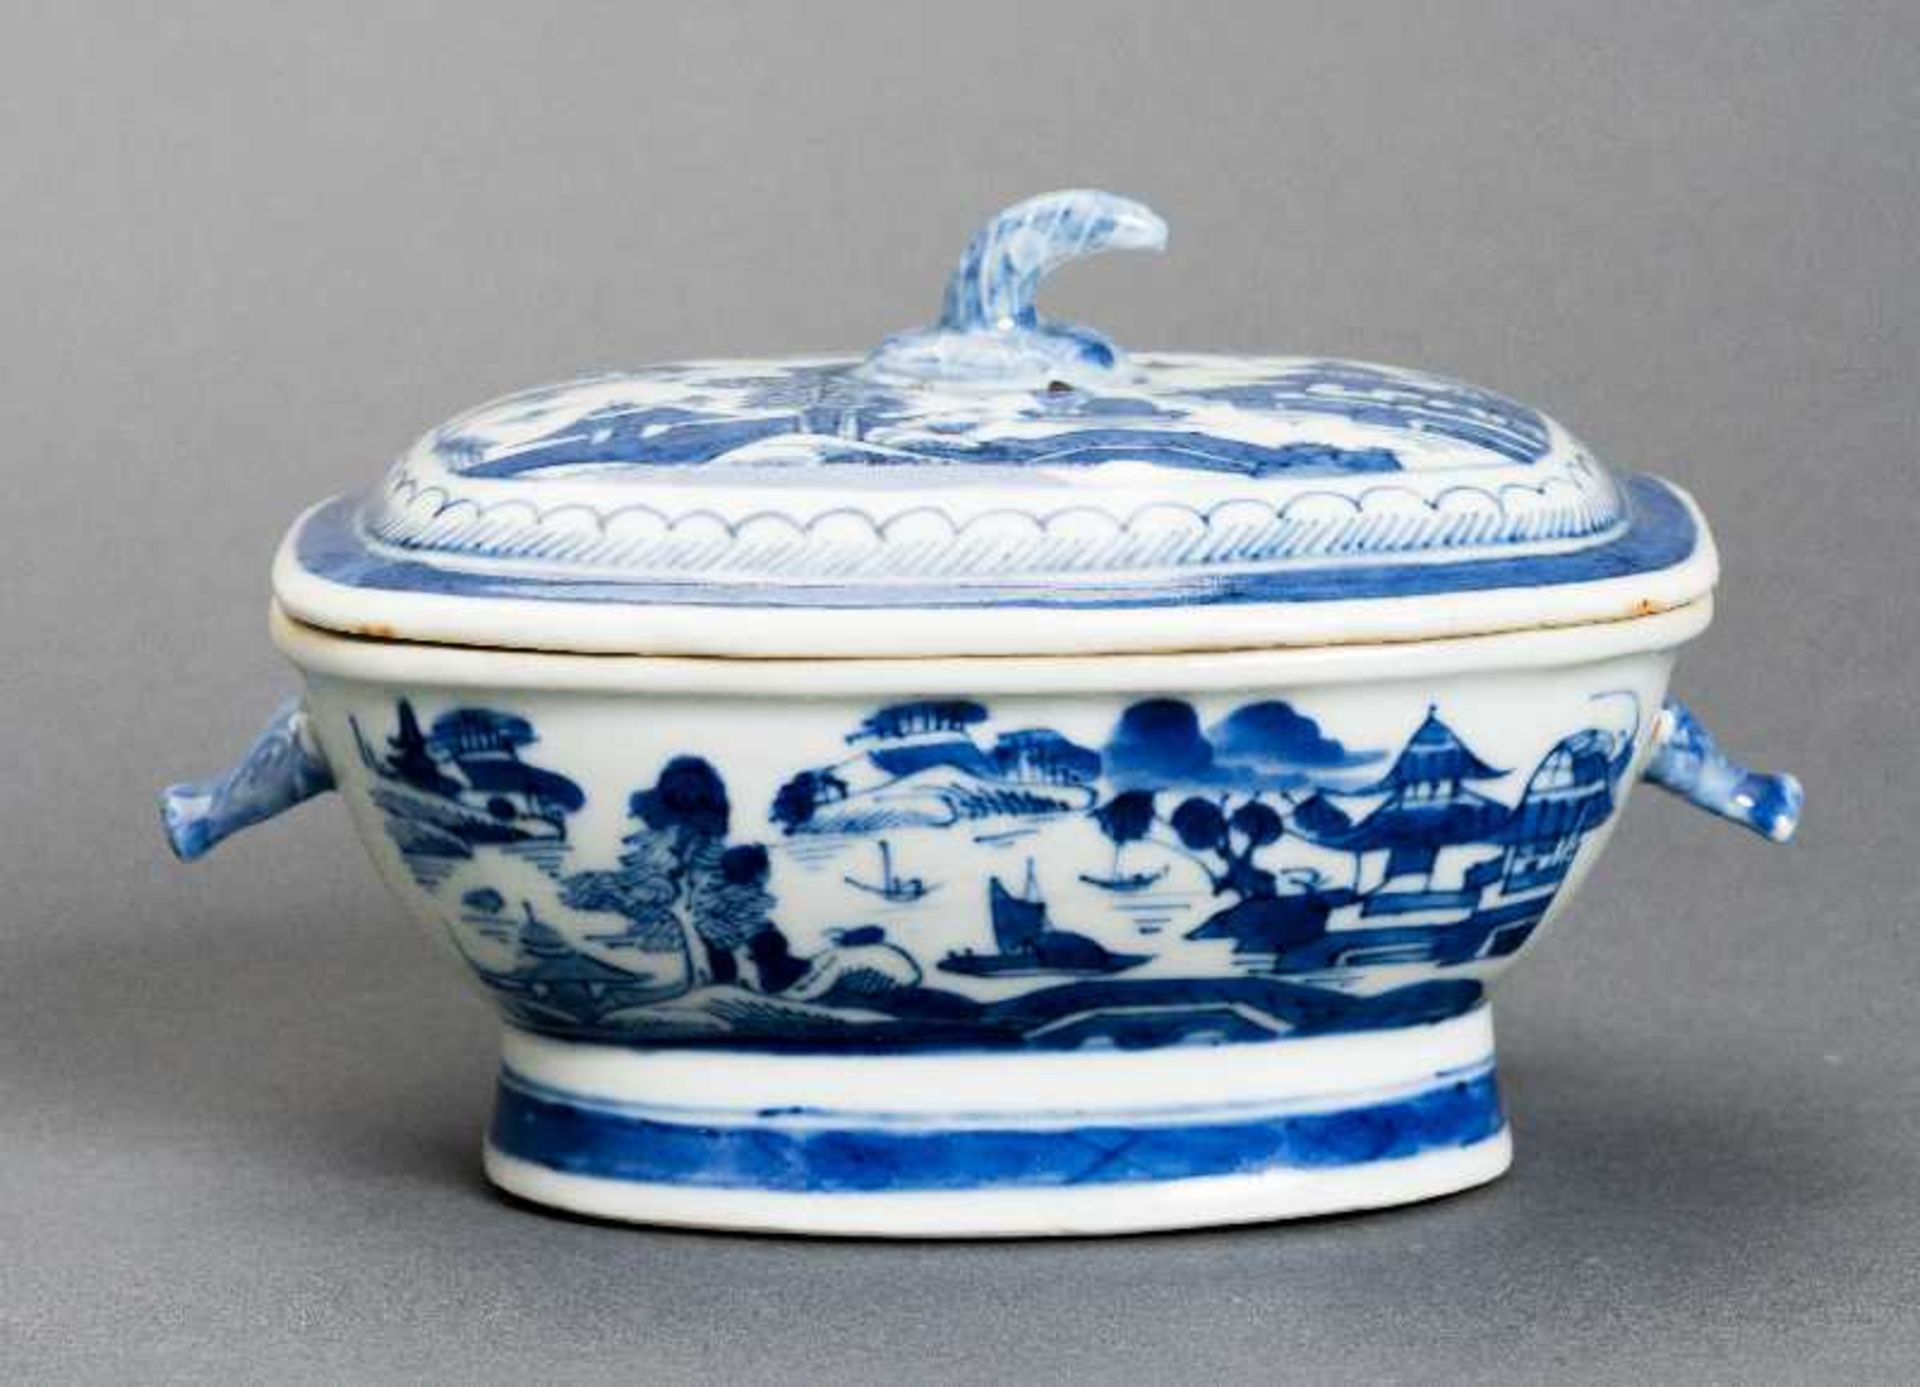 DECKELSCHALE Blauweiß-Porzellan. China, Qing-Dynastie, 19. Jh. Diese sehr ansprechende oval-